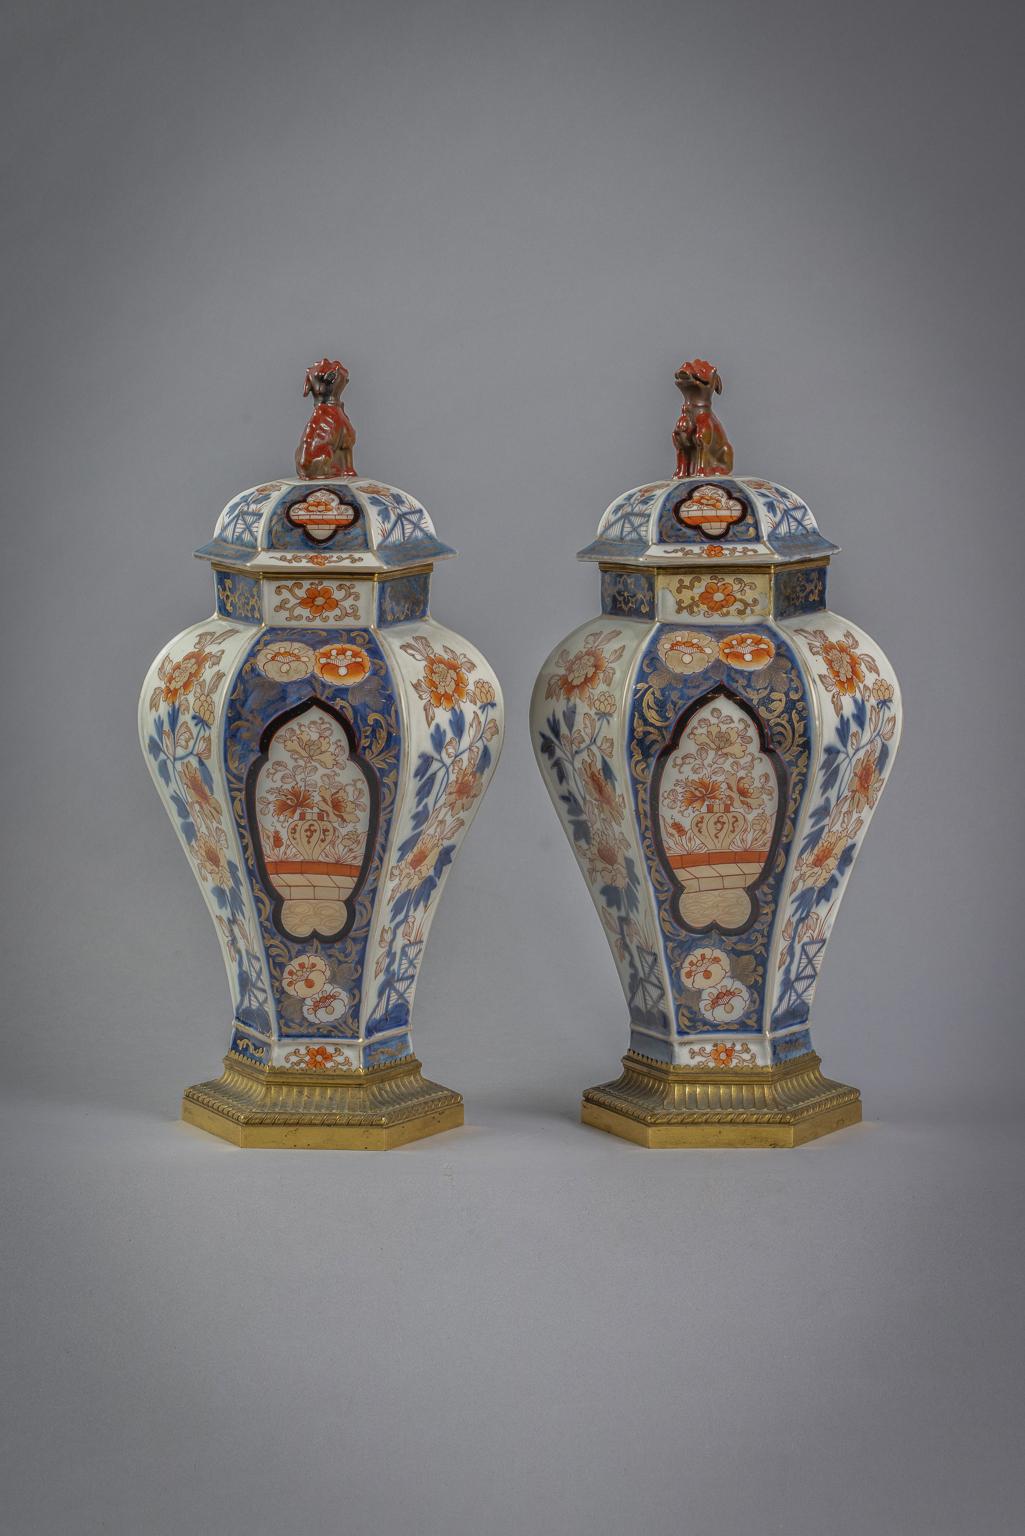 Imari-Stil mit Tafeln mit Blattwerk auf weißem Grund im Wechsel mit Tafeln auf blauem Unterglasurgrund mit Röschen und Blumen in einer Vase. Die Abdeckungen sind ähnlich verziert und mit einem Fohlenhund versehen.